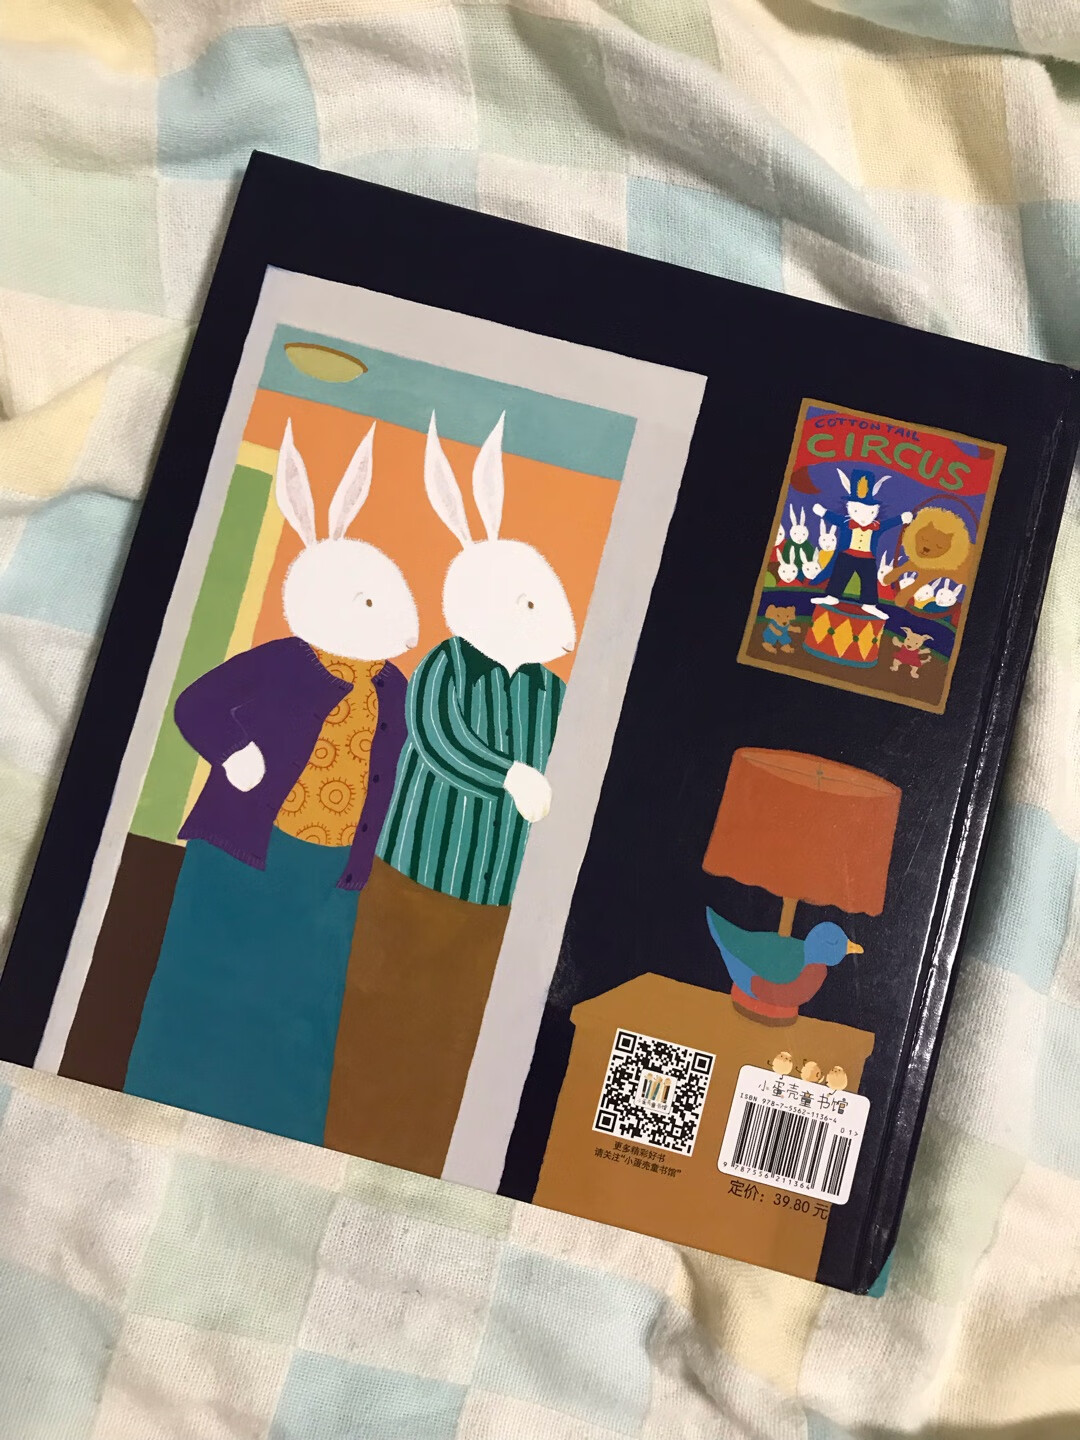 很可爱的一本书，讲小兔子们晚上贪玩不睡觉的故事，画风不错。宝宝很喜欢，而且会发现到画本上的一些小细节，推荐购买。